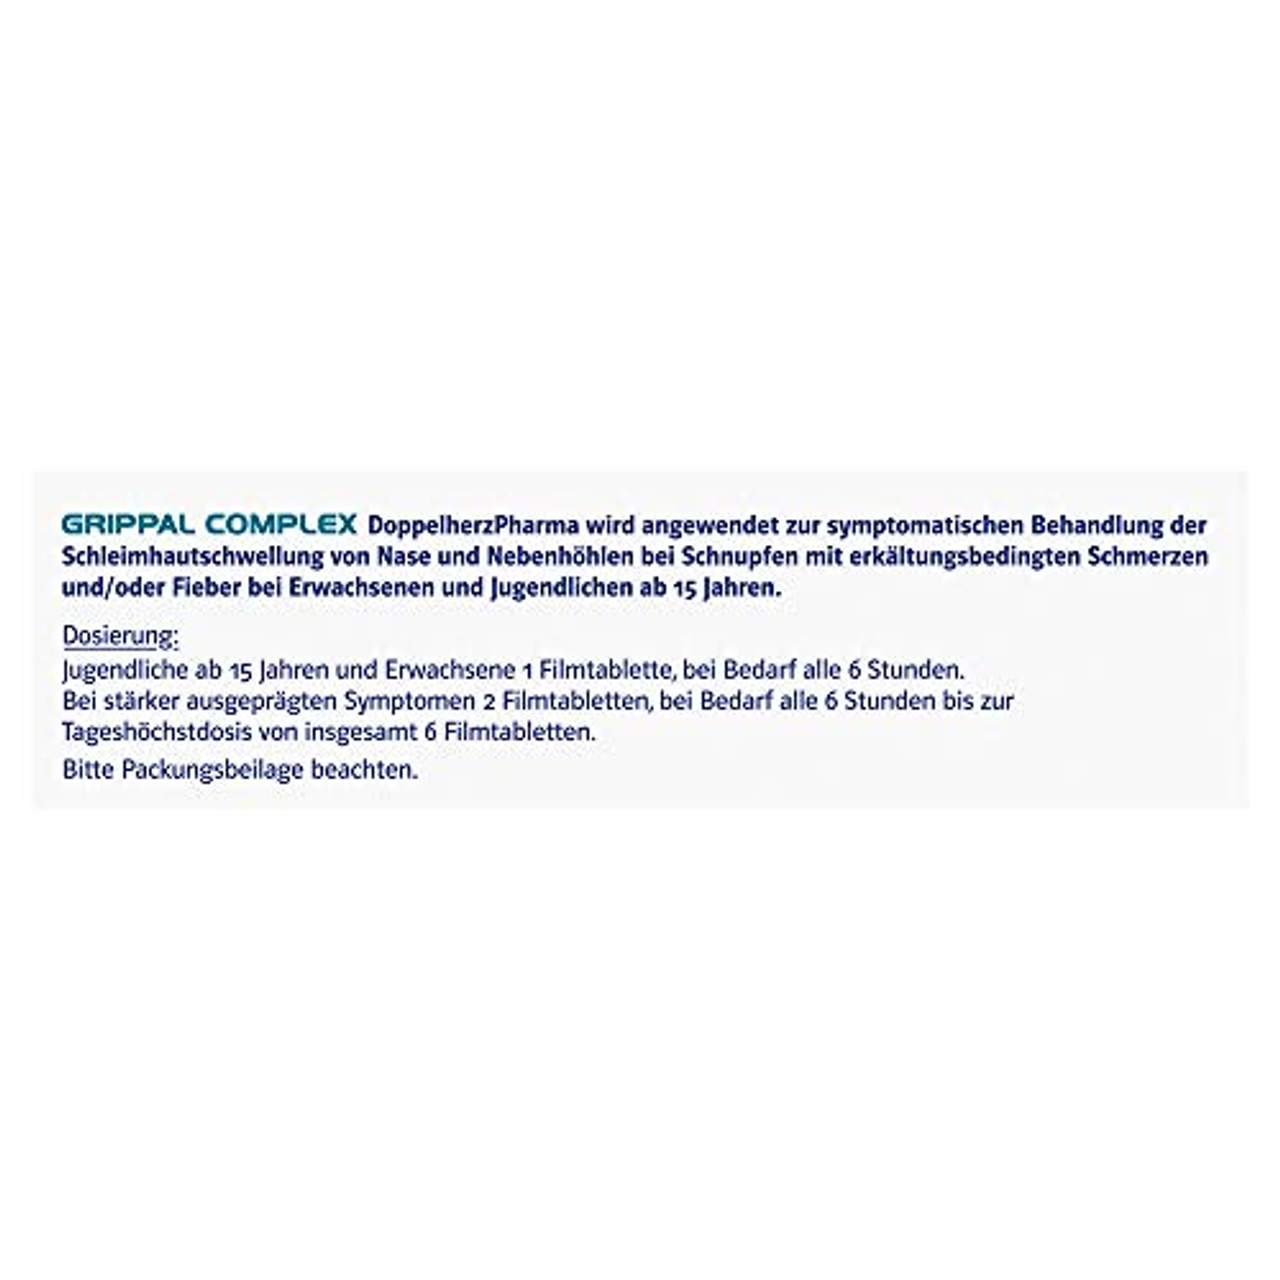 Grippal Complex DoppelherzPharma 200 mg/30 mg Filmtabletten